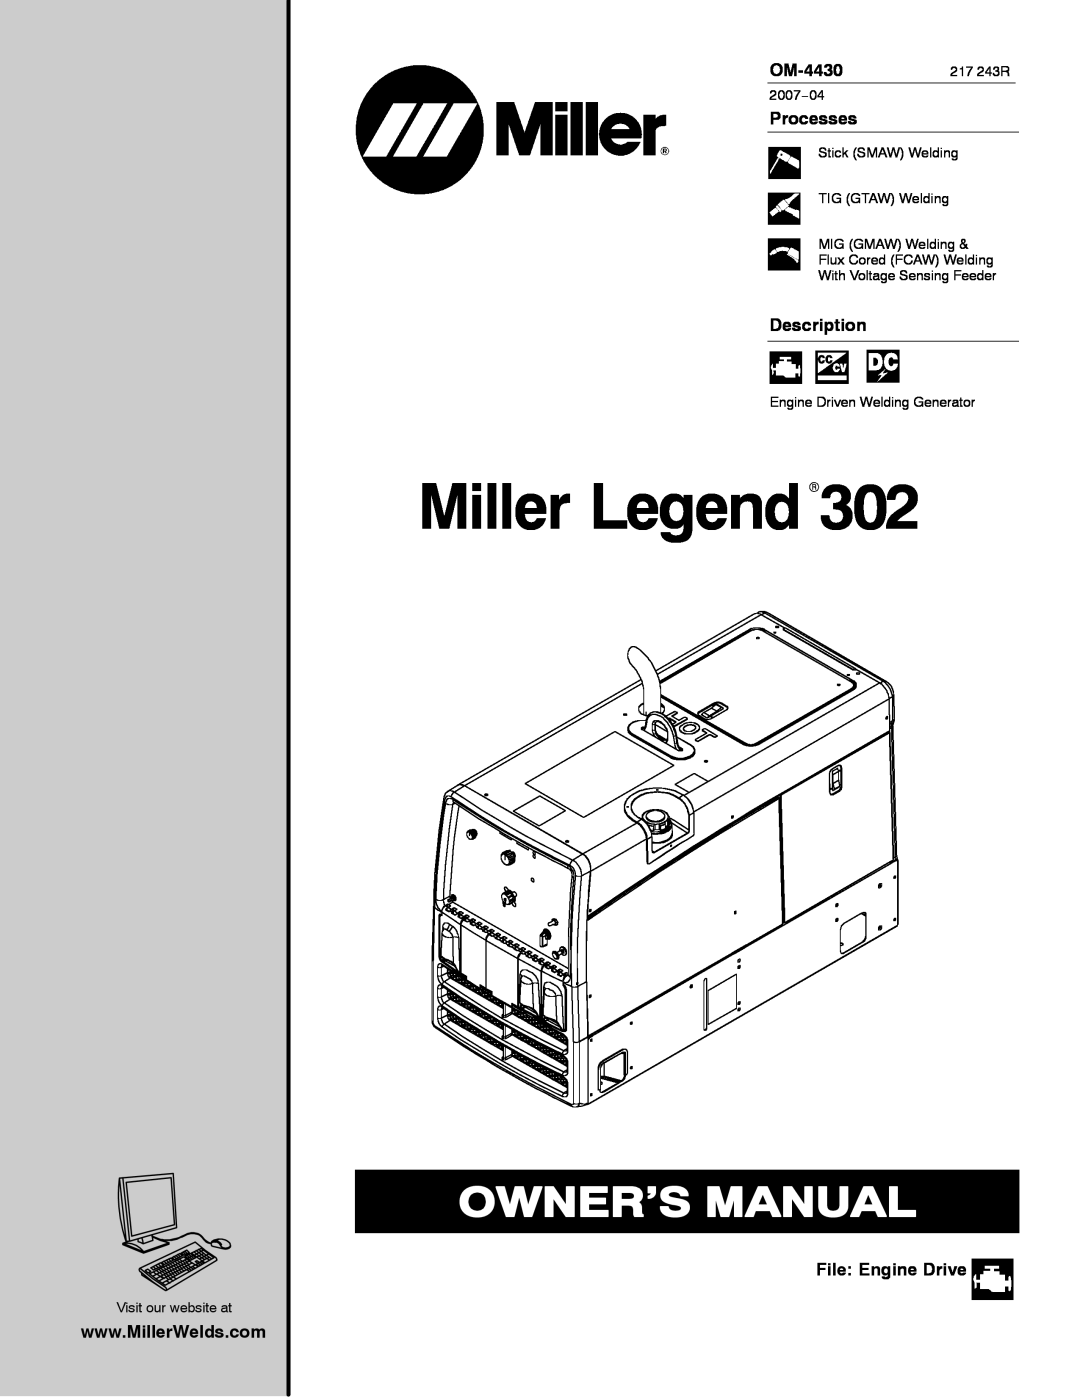 Miller Electric 280 NT manual Miller LegendR302, OM-4430217 243R, Processes, Description, File Engine Drive 